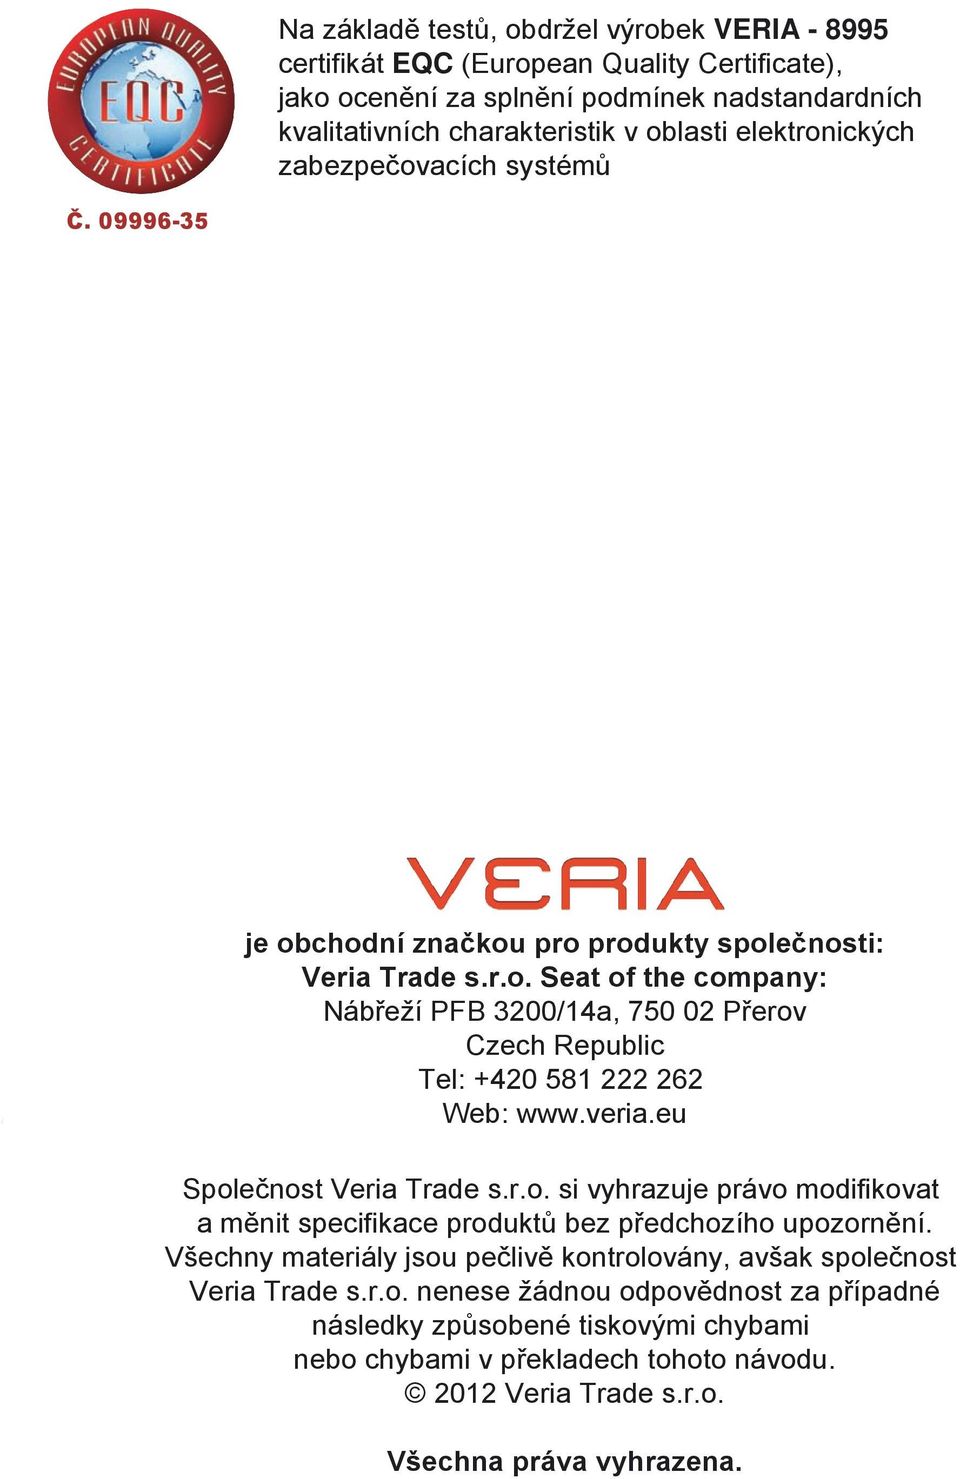 veria.eu Společnost Veria Trade s.r.o. si vyhrazuje právo modifikovat a měnit specifikace produktů bez předchozího upozornění.